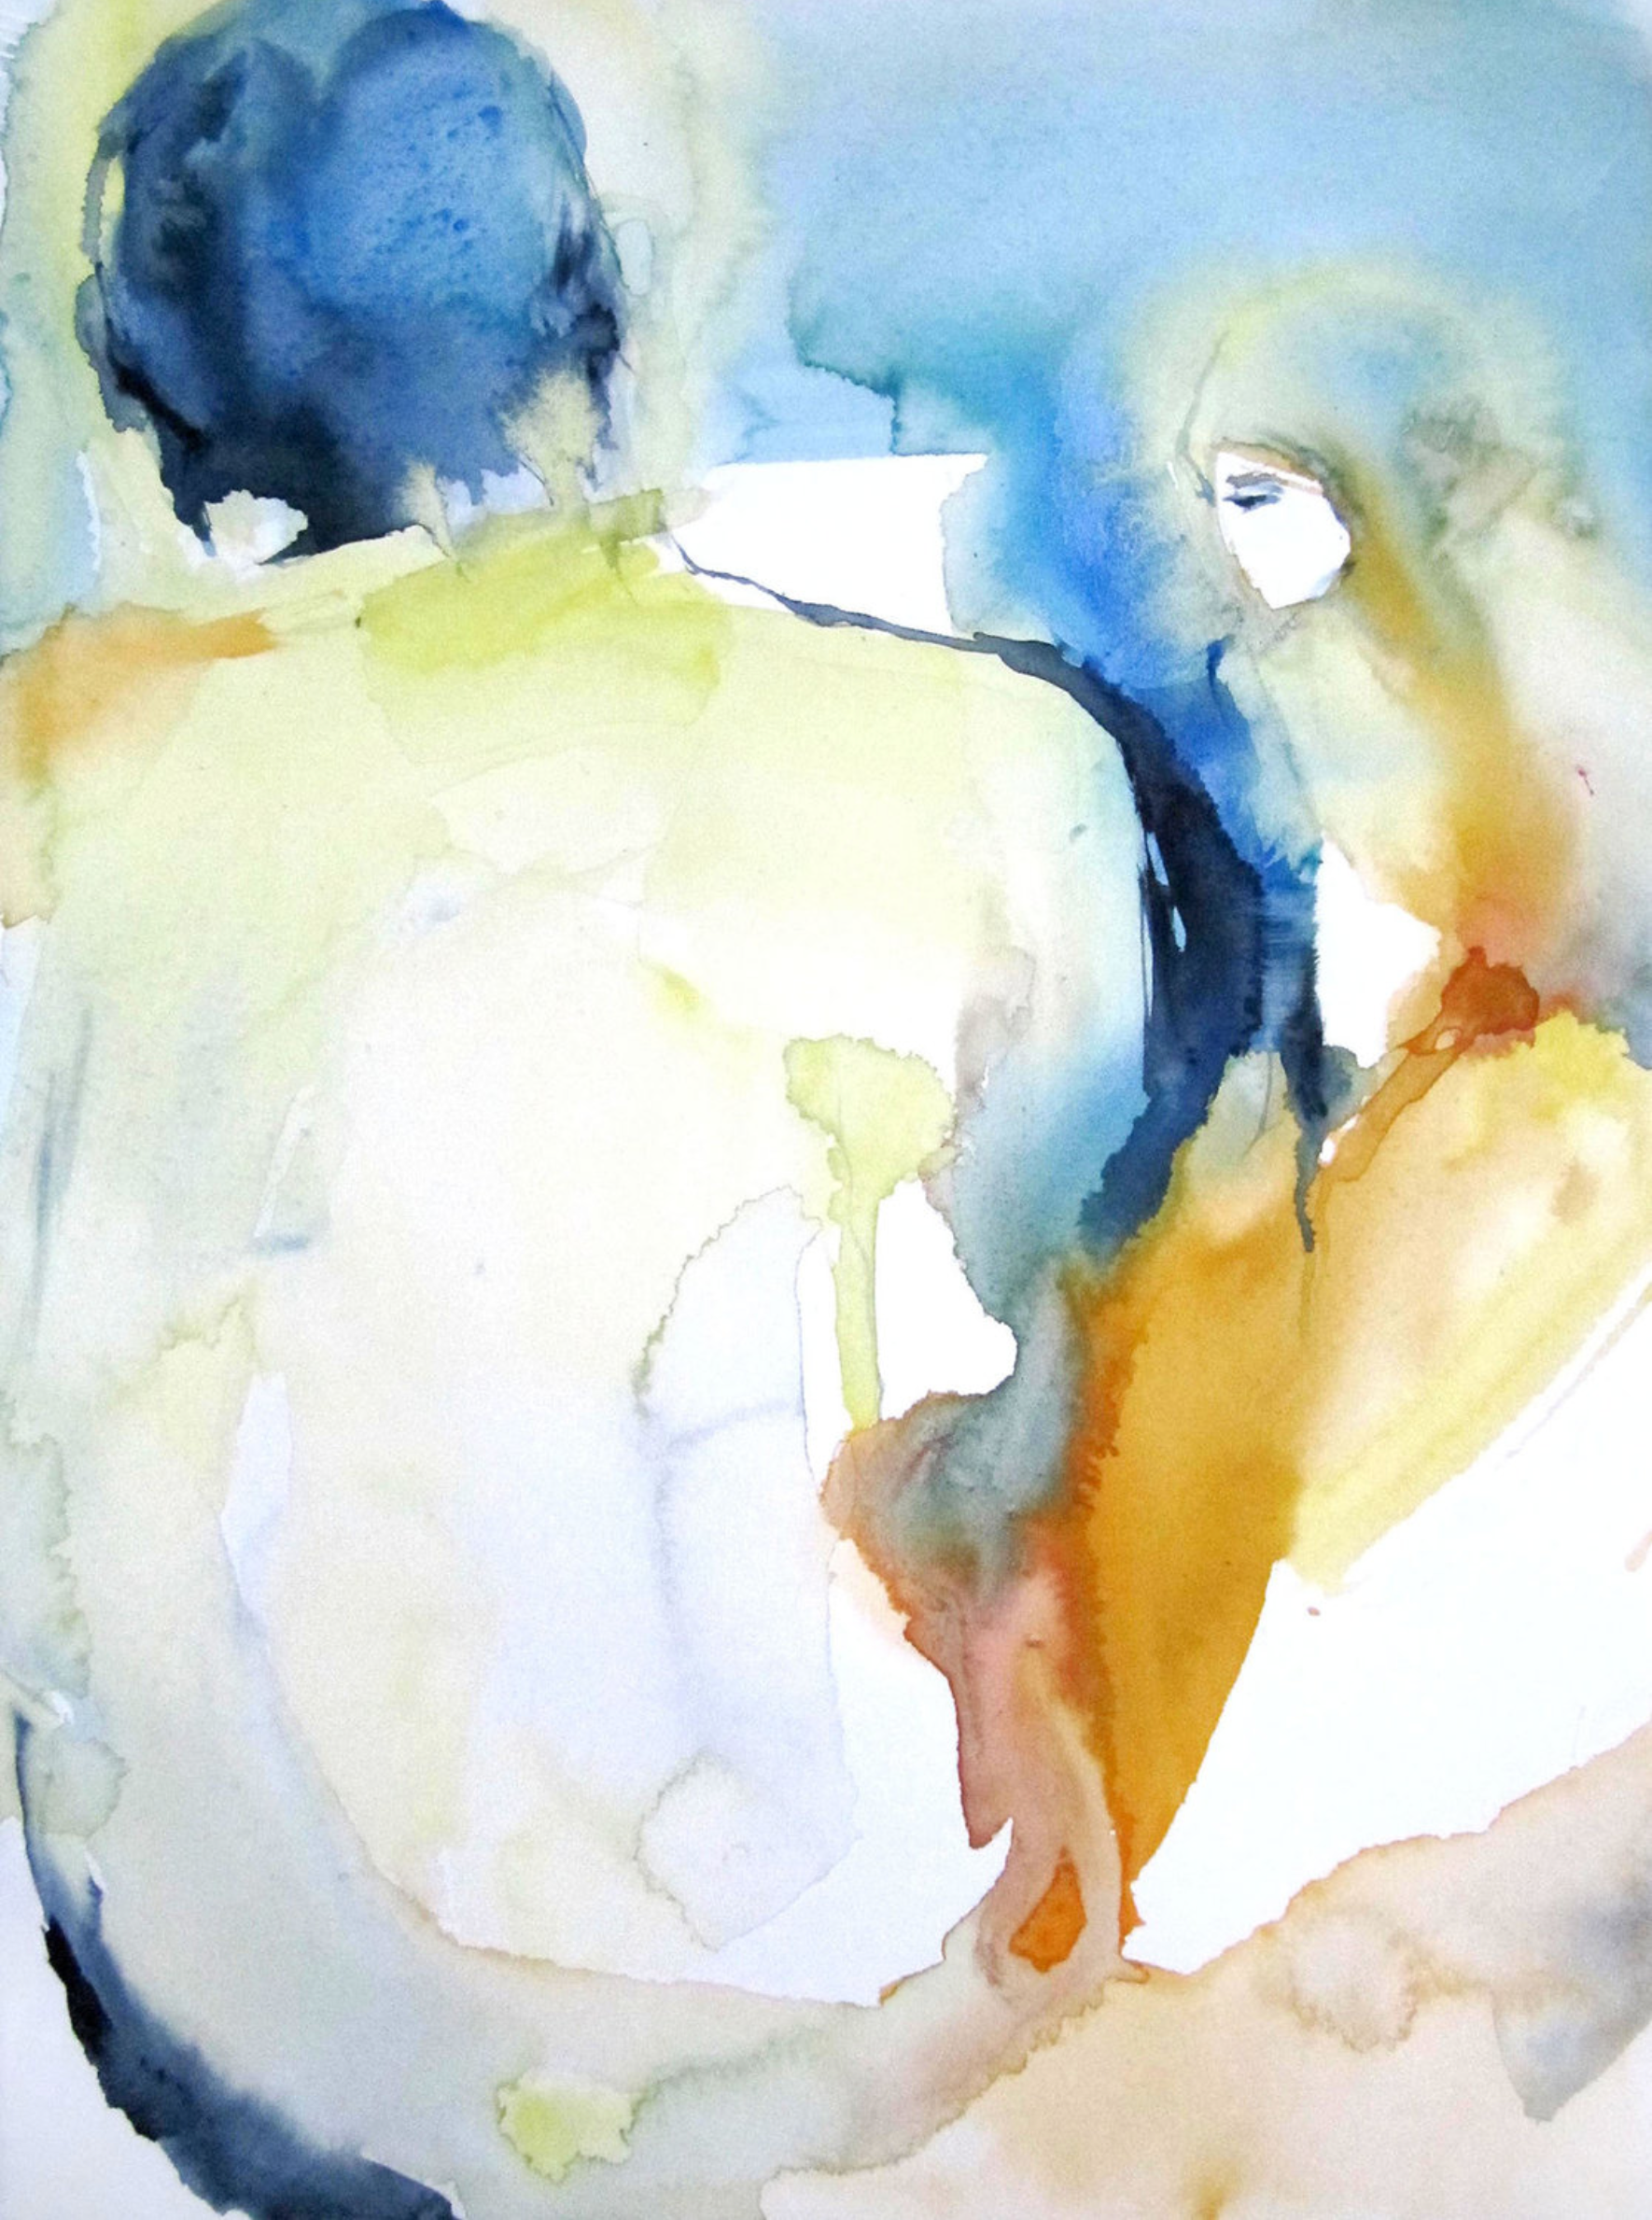 L'opera "Point de vue" di Sylvia Baldeva è un acquerello, dipinto semi-astratto. Scena di vita, coppia, uomo, donna, astrazione figurativa, acquerello su carta Canson®.